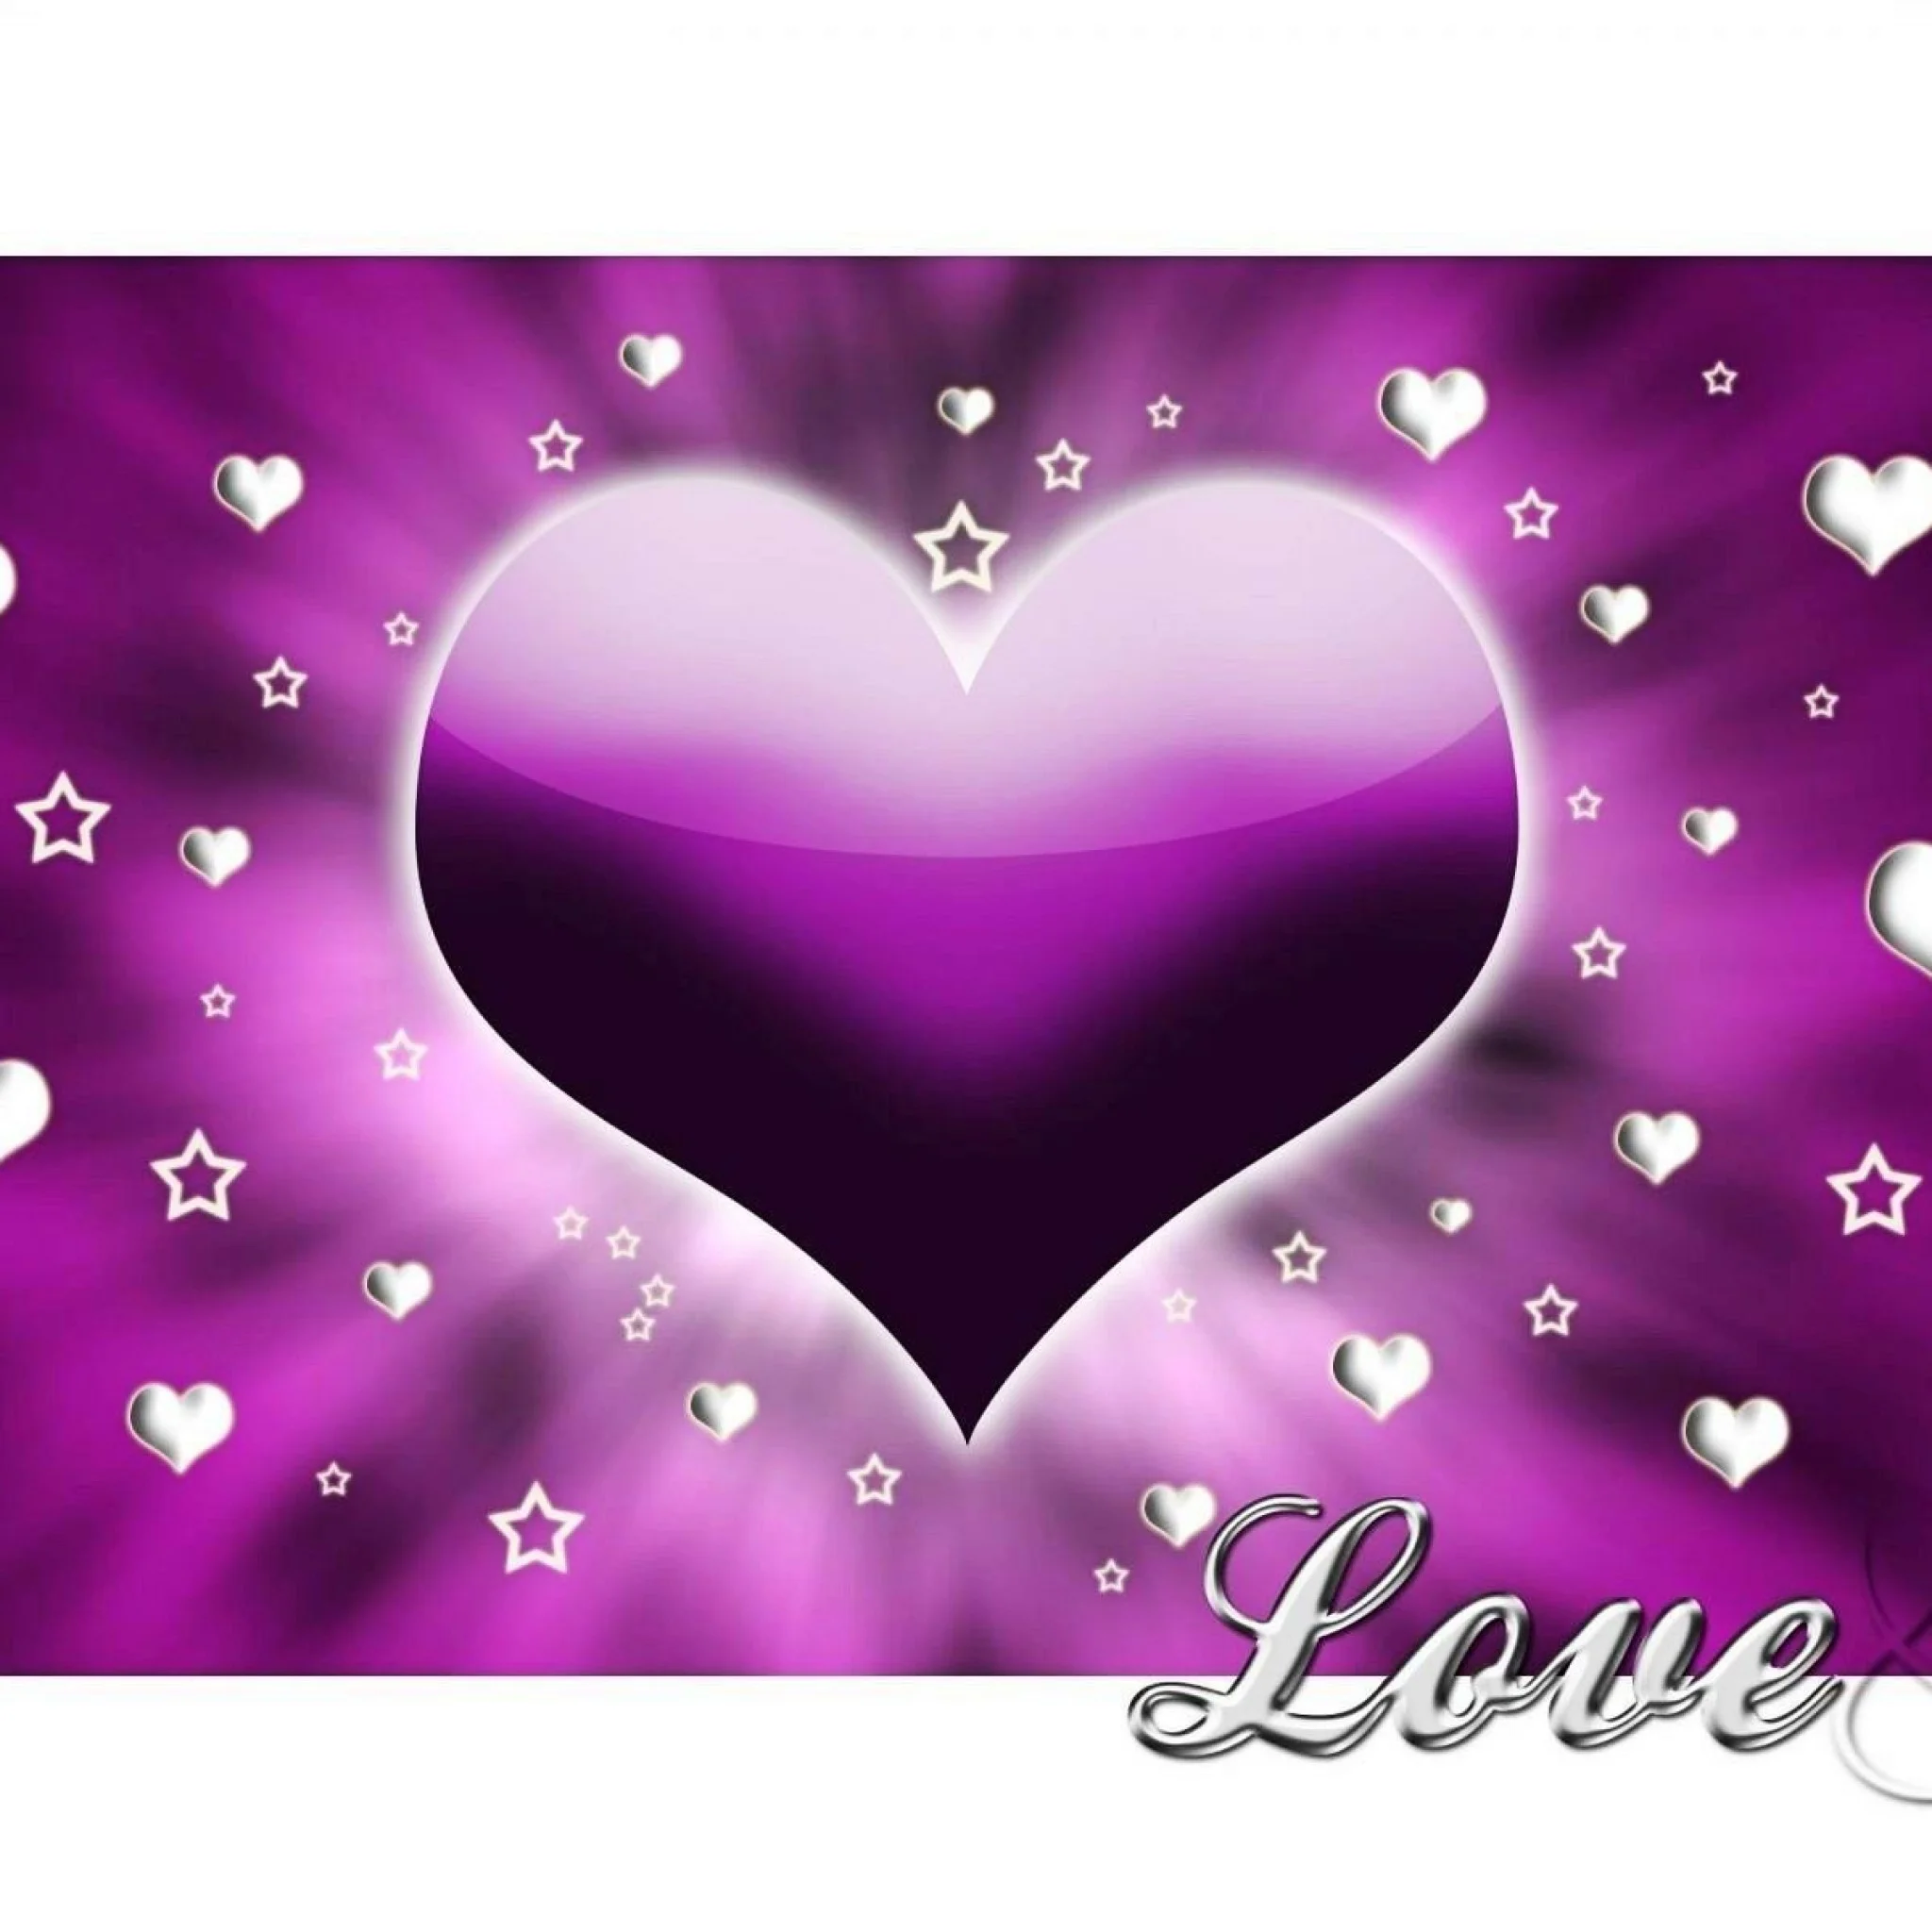 Heart Purple White Love Image Wallpaper #13821 Wallpaper computer | best  website wallpaperput.com